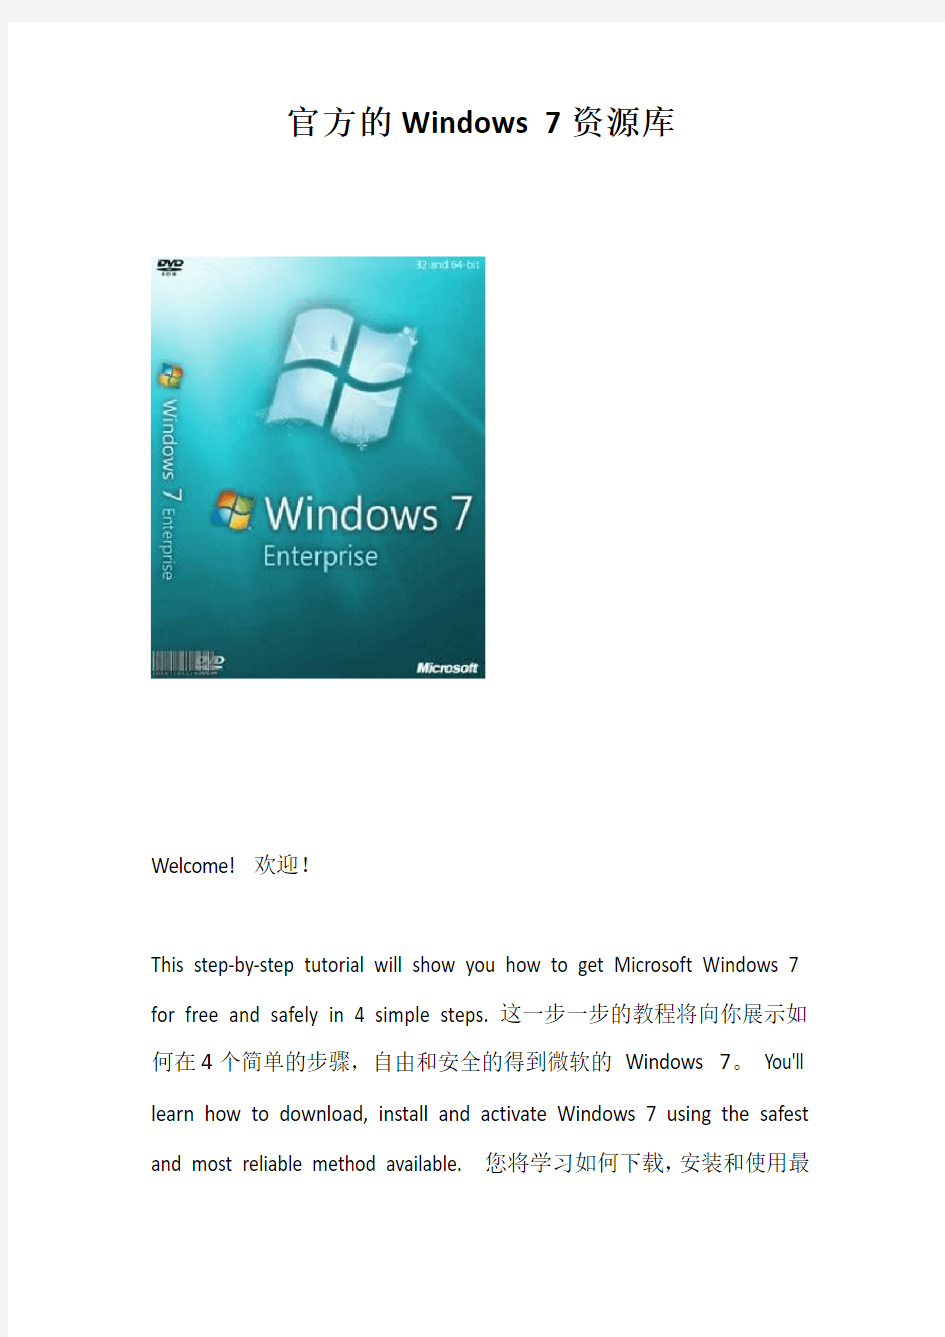 官方的Windows 7资源库